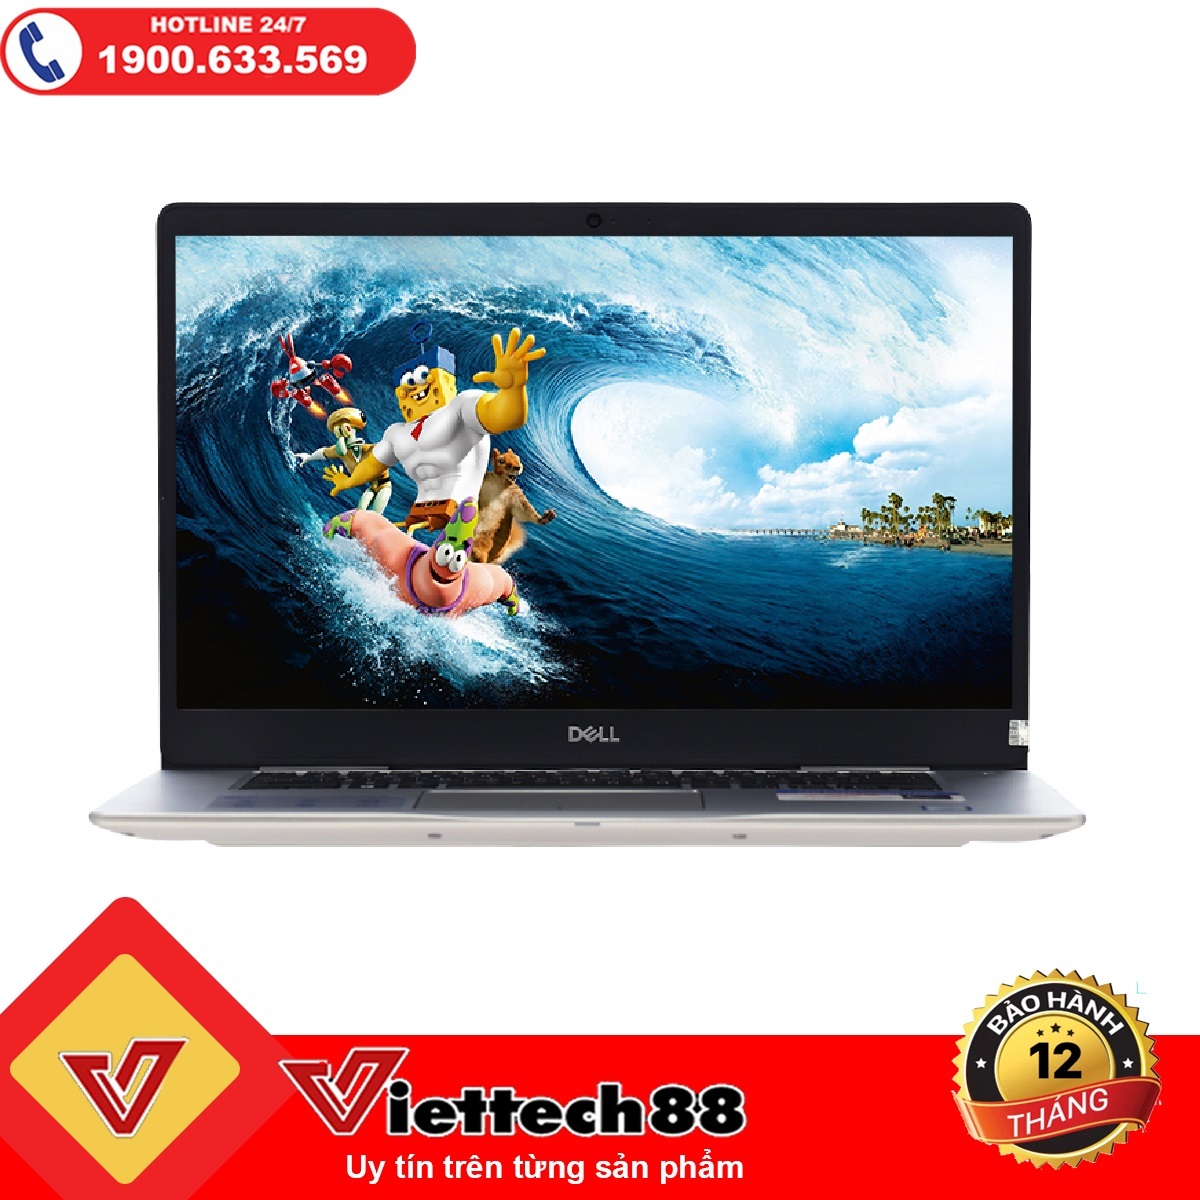 Laptop Dell Inspiron 15 7570-N5I5102OW - Intel core i5, 4GB RAM, HDD 1TB + SSD 128GB, 15.6 inch